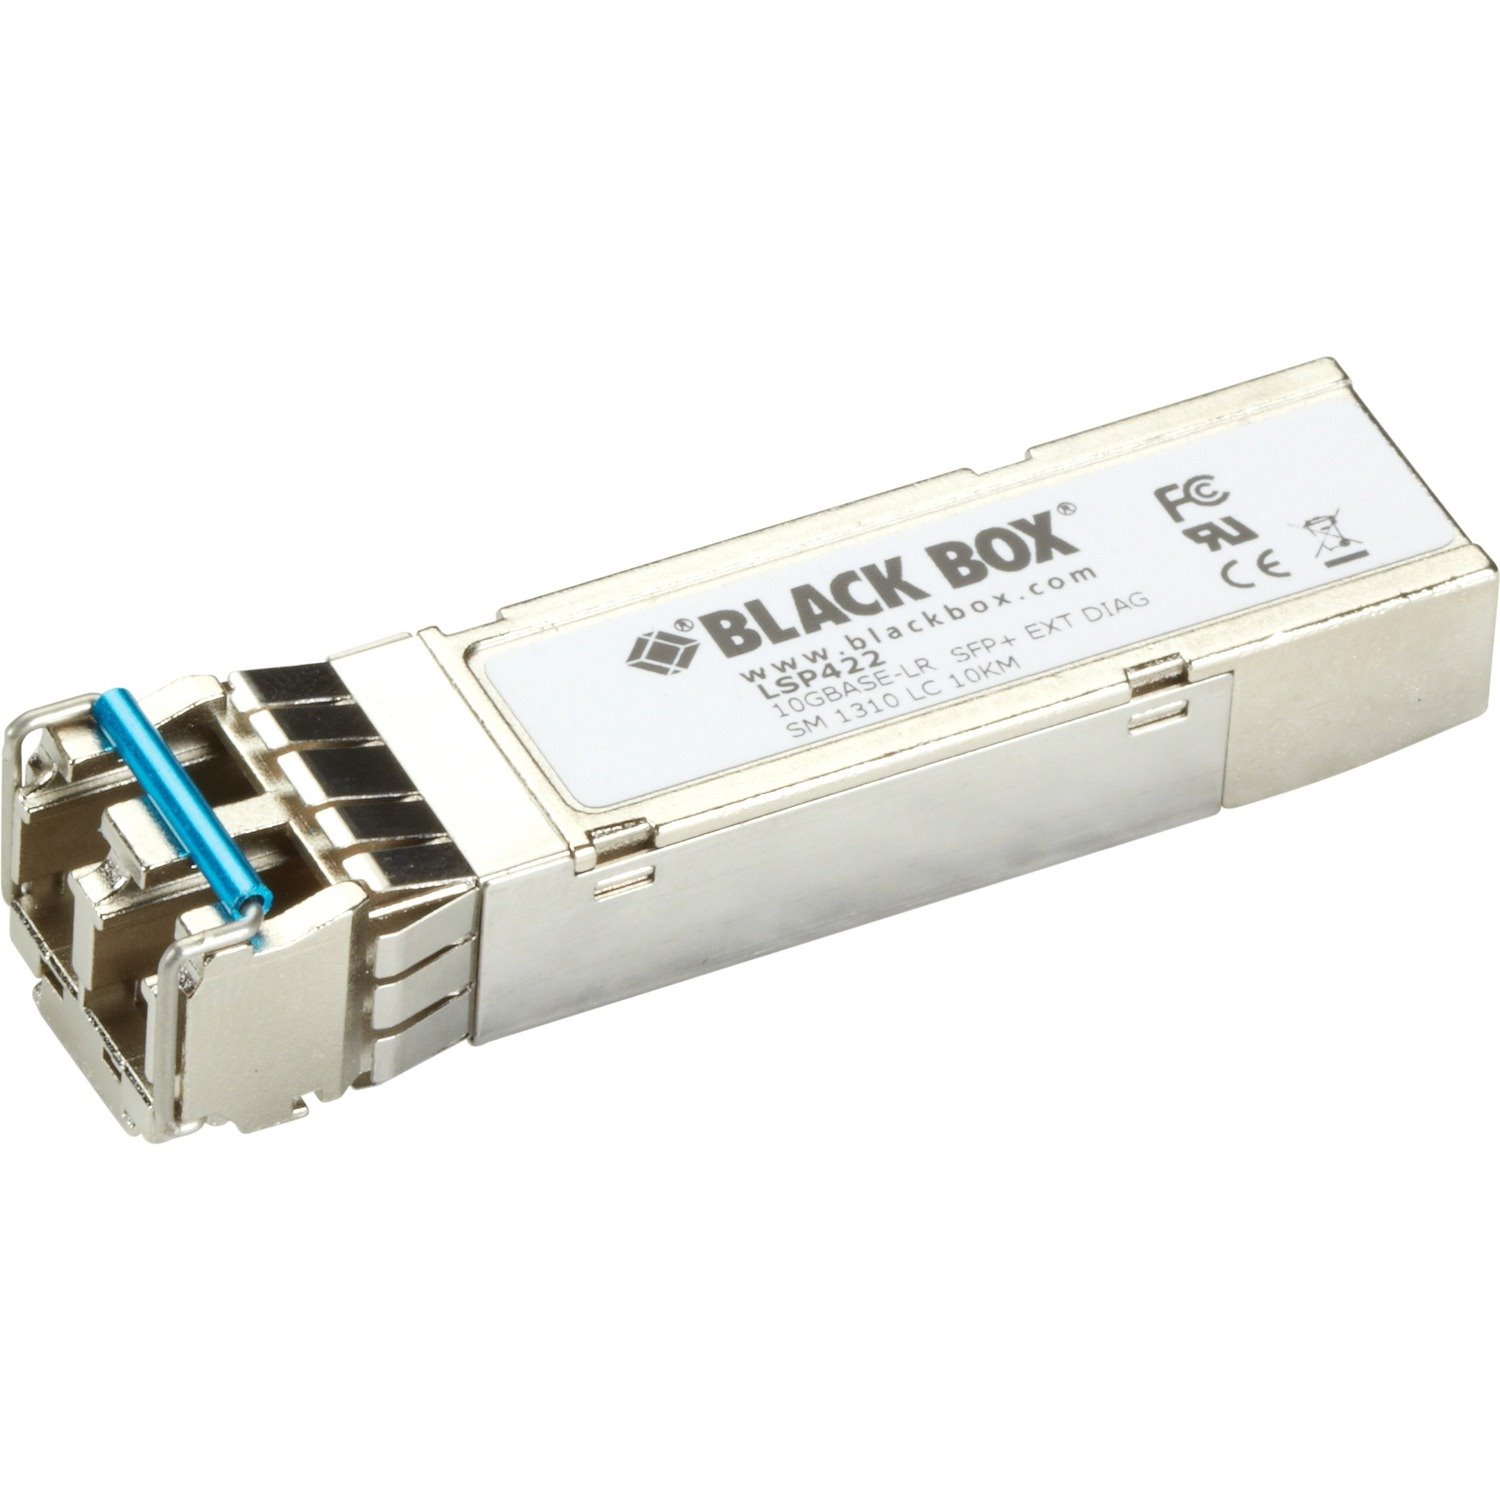 Black Box 10GBASE-SR SFP+, 1310-nm Single-Mode, 10 km, LC